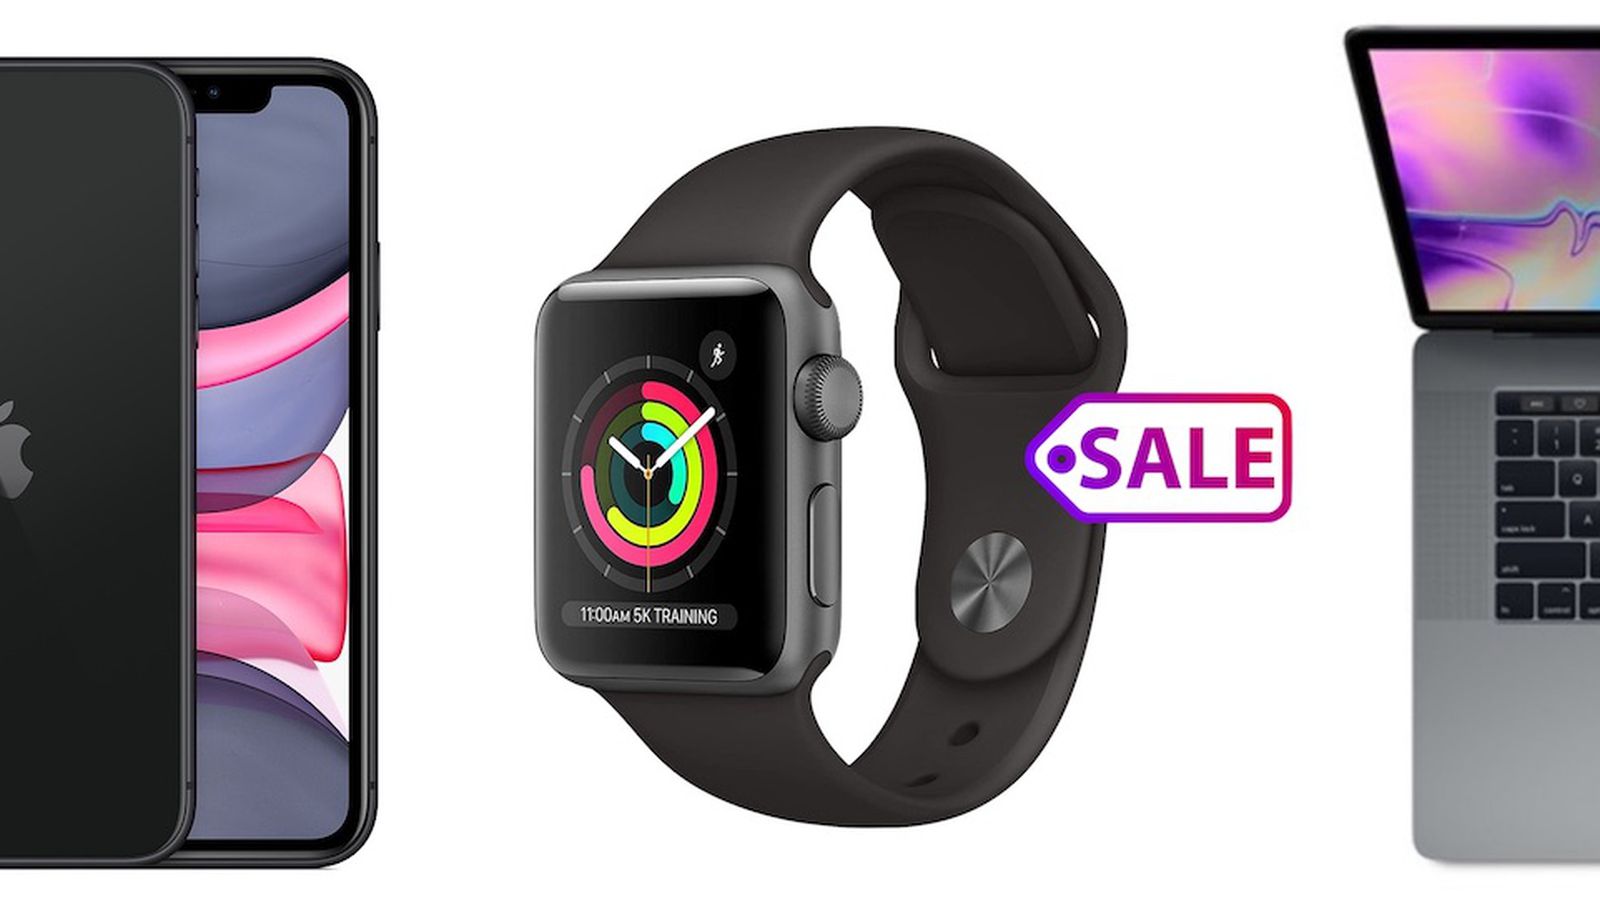 kompas Controle voor mij Deals: Woot Discounts Refurbished Apple Watch Series 3, iPhone 11, and  MacBook Models - MacRumors